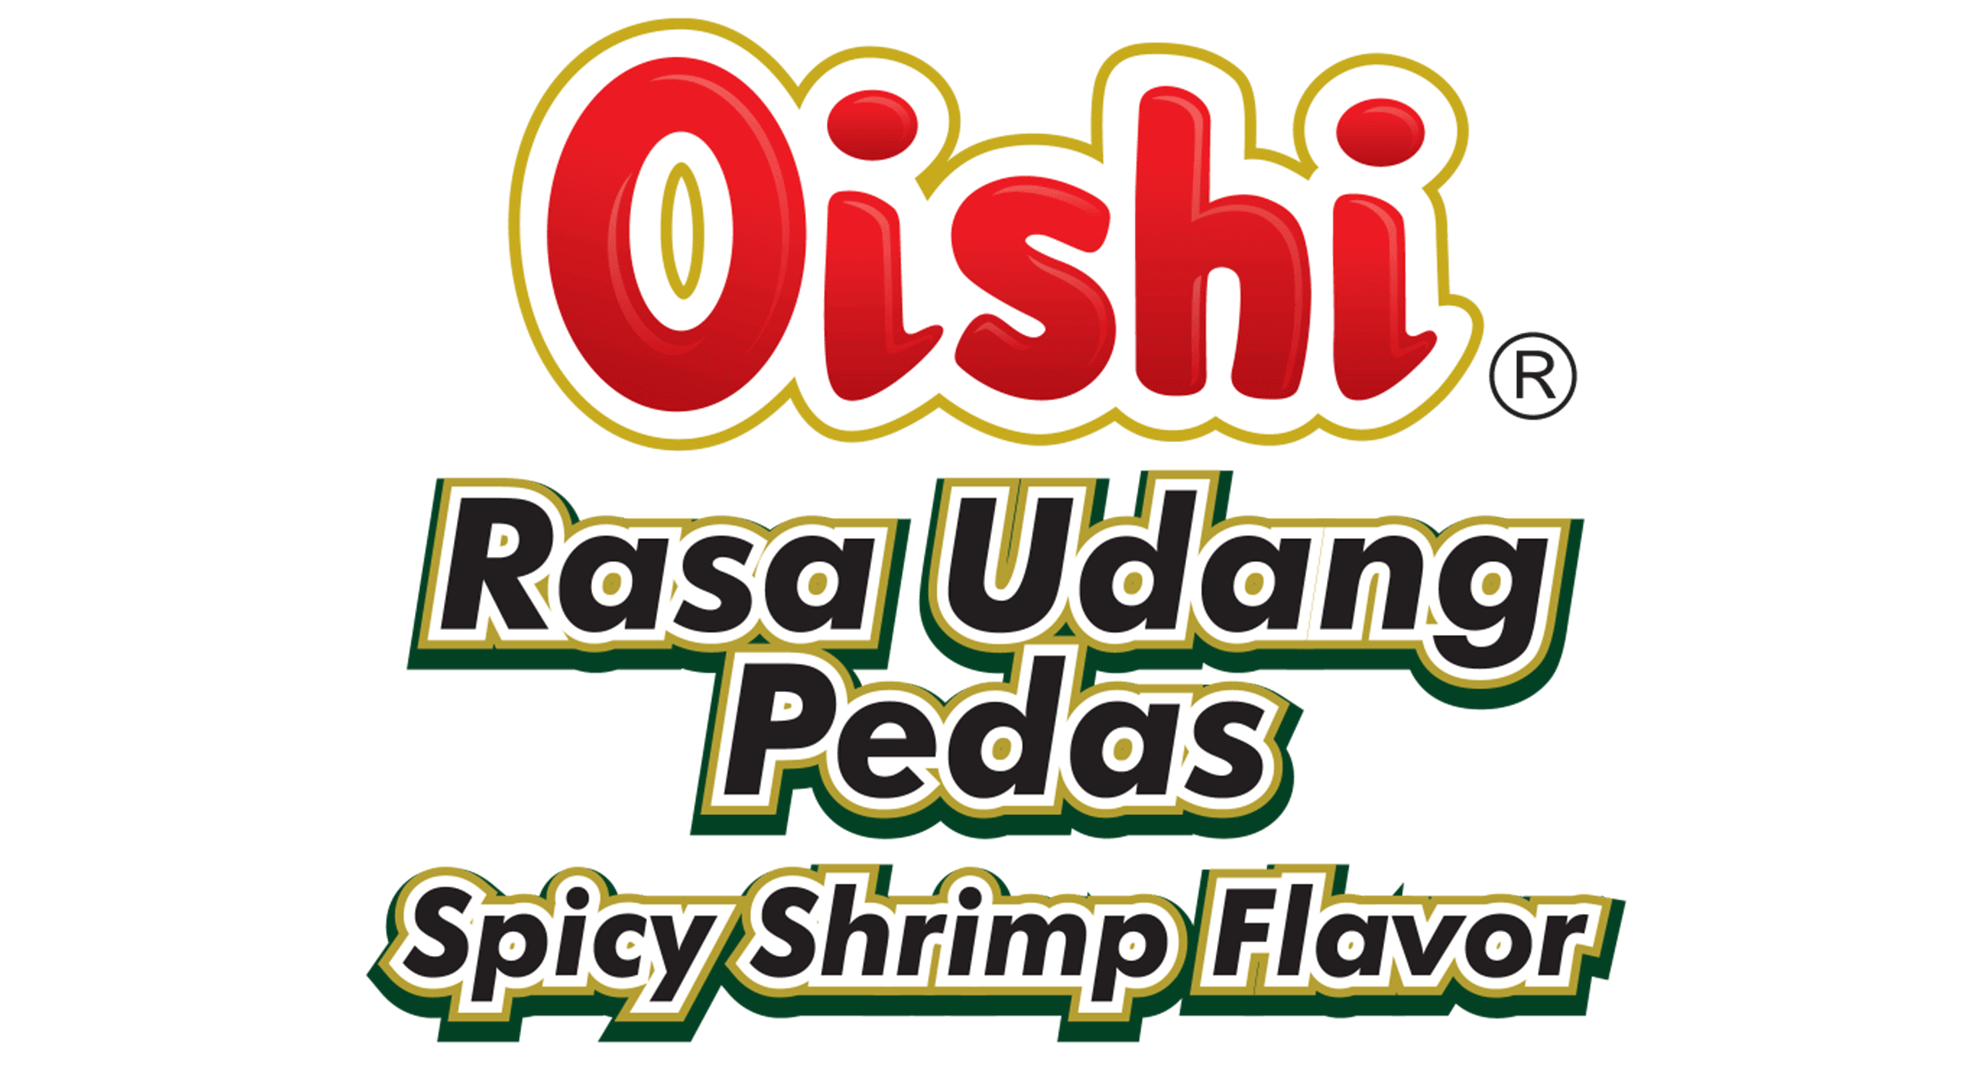 OISHI udang pedas